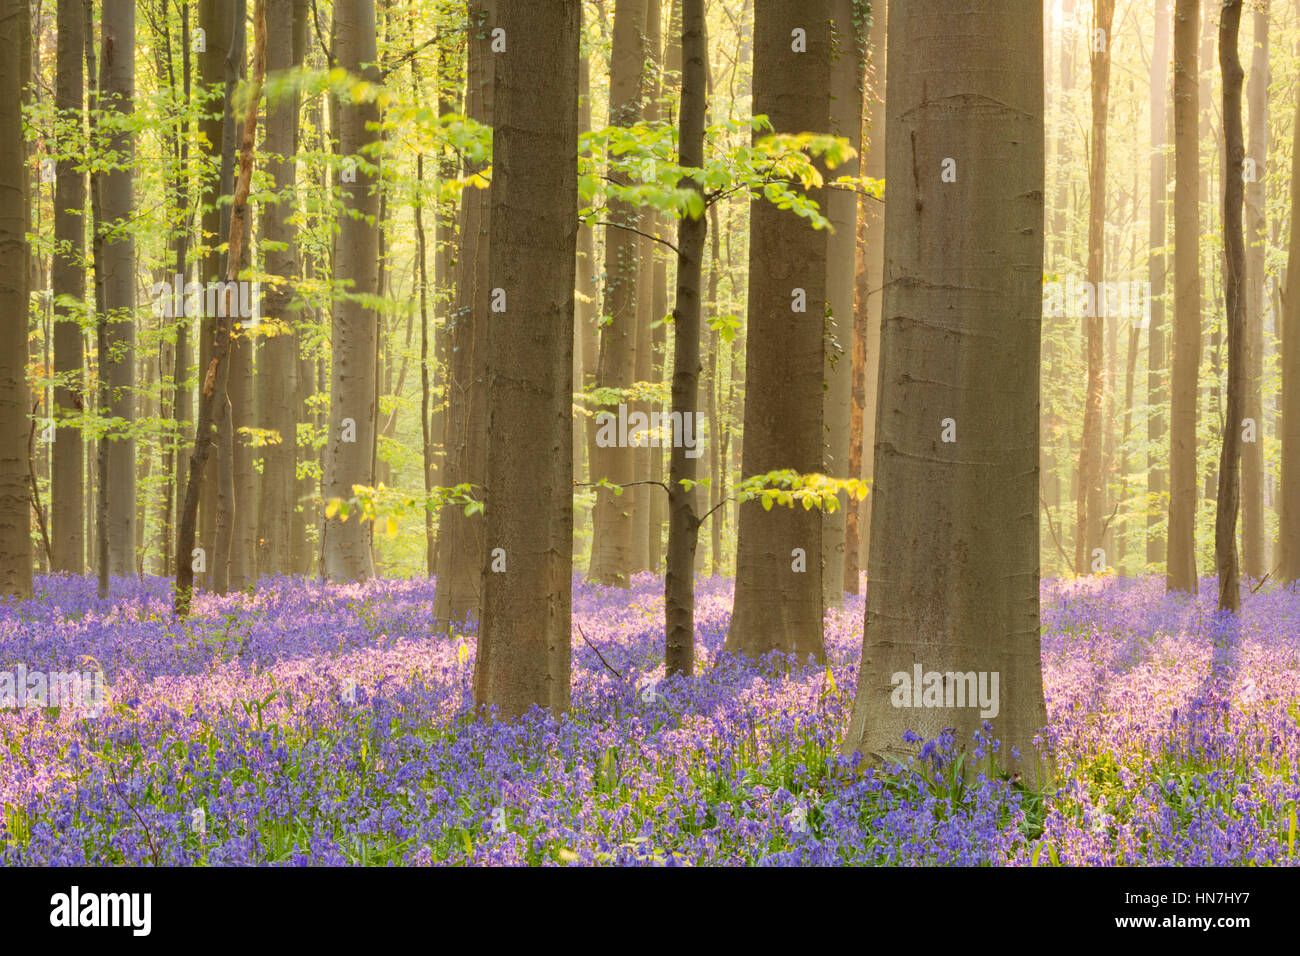 Un hermoso bosque bluebell florece en la luz del sol por la mañana temprano. Fotografiado en el bosque de Halle (Hallerbos) en Bélgica. Foto de stock